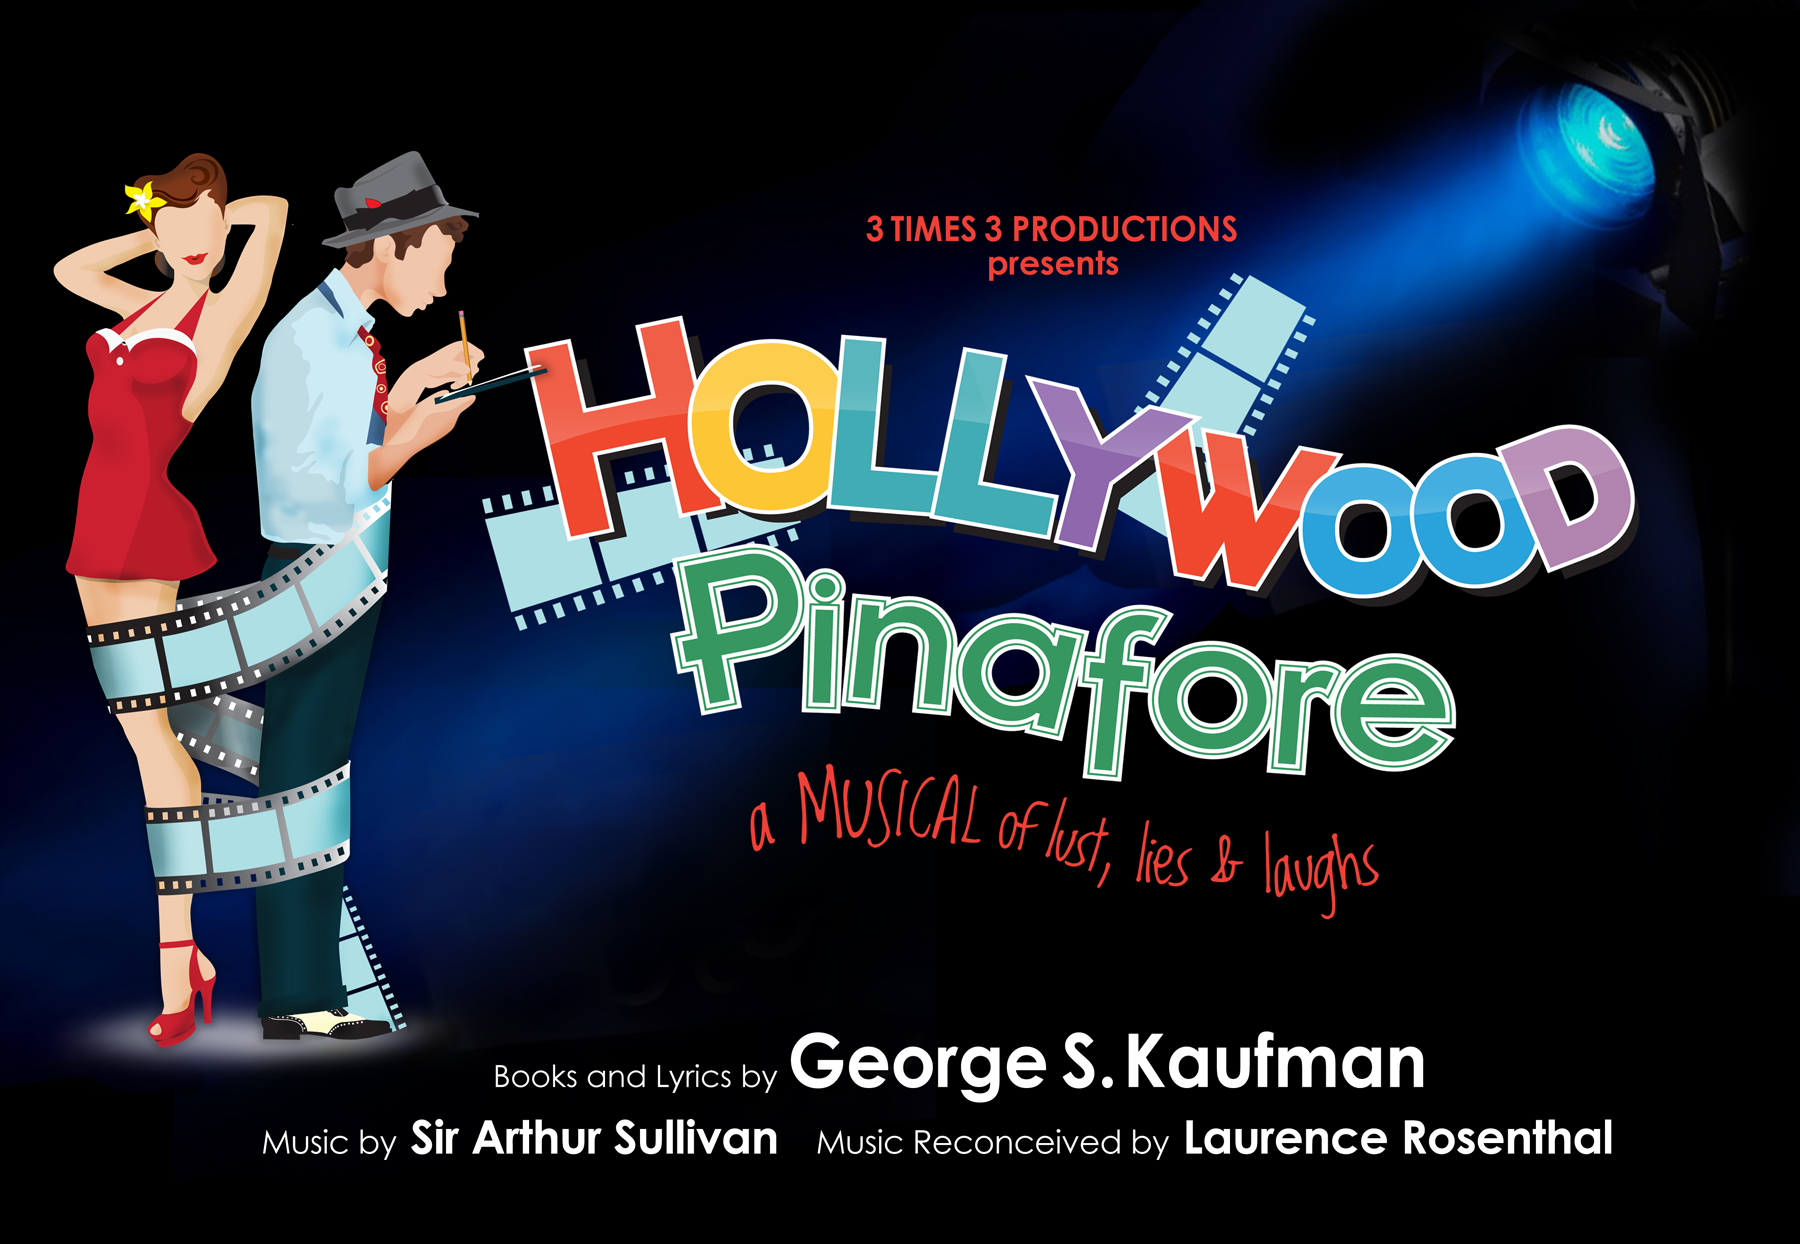 Hollywood Pinafore logo